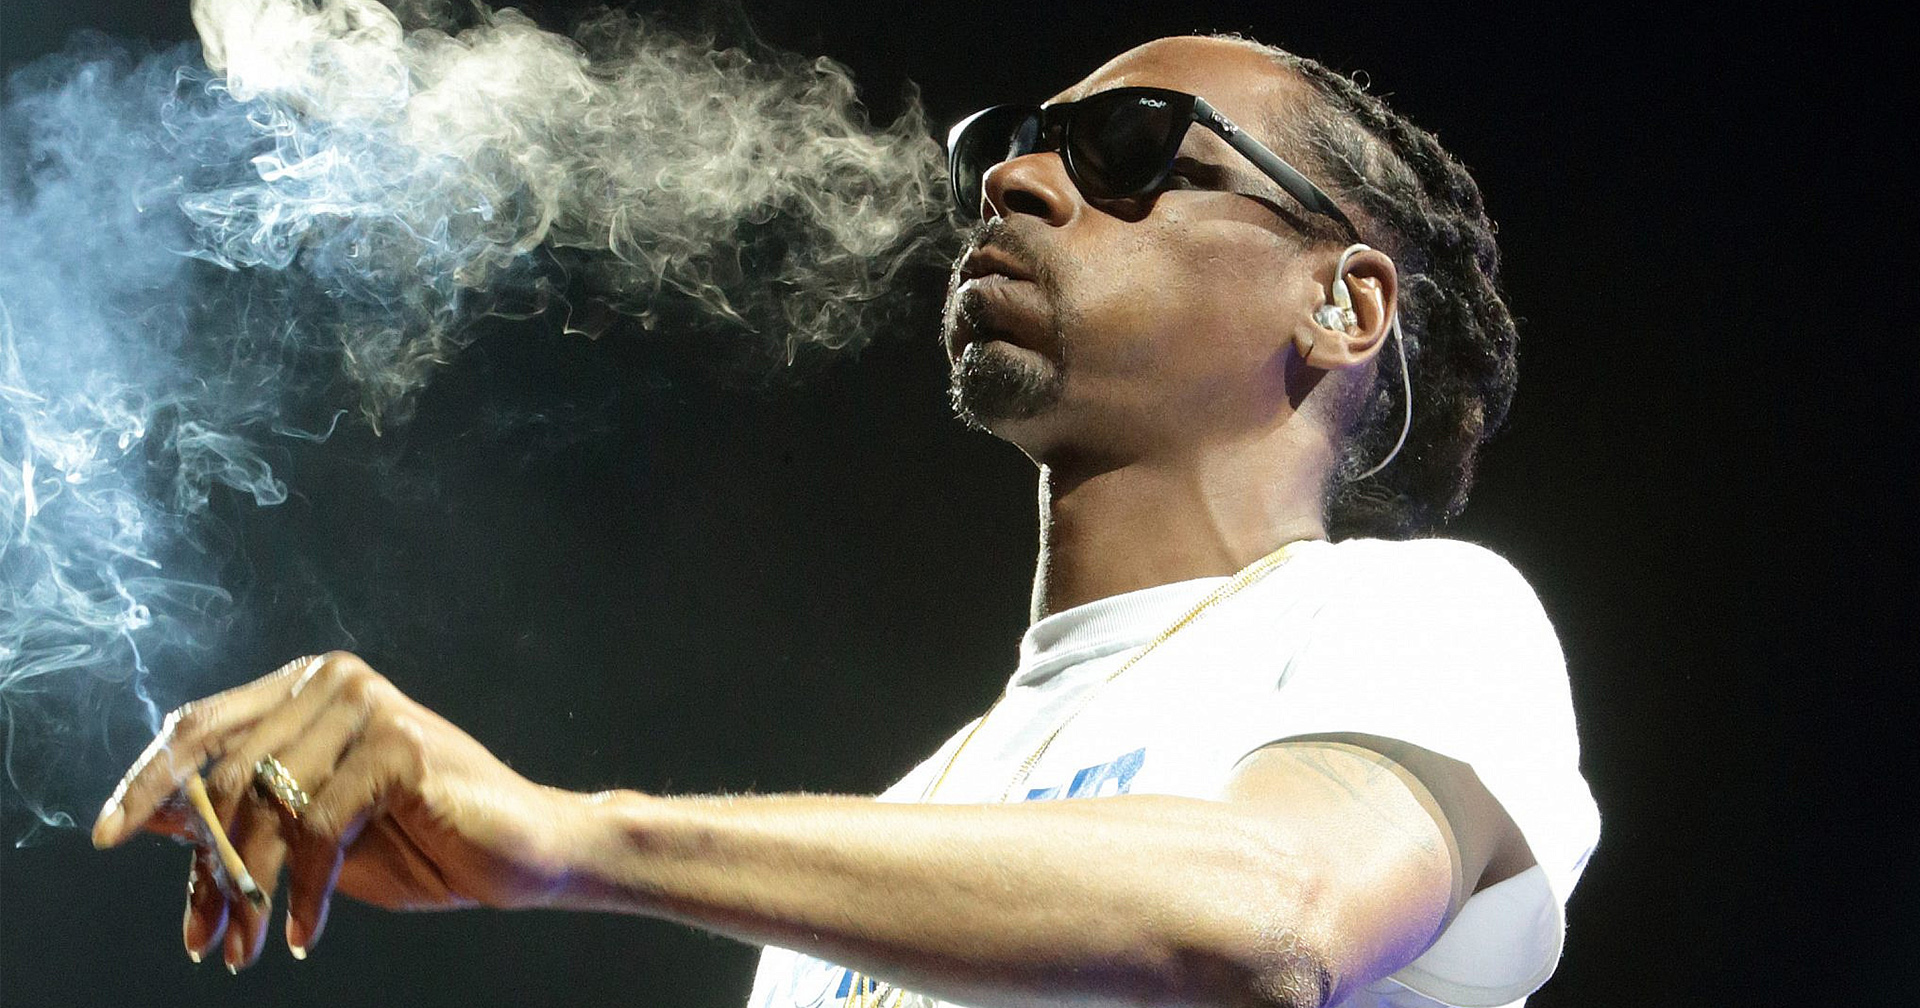 นักพันลำประจำตัวเผย Snoop Dogg ปุ๊นเป็นประจำวันละ 75-100 มวน!